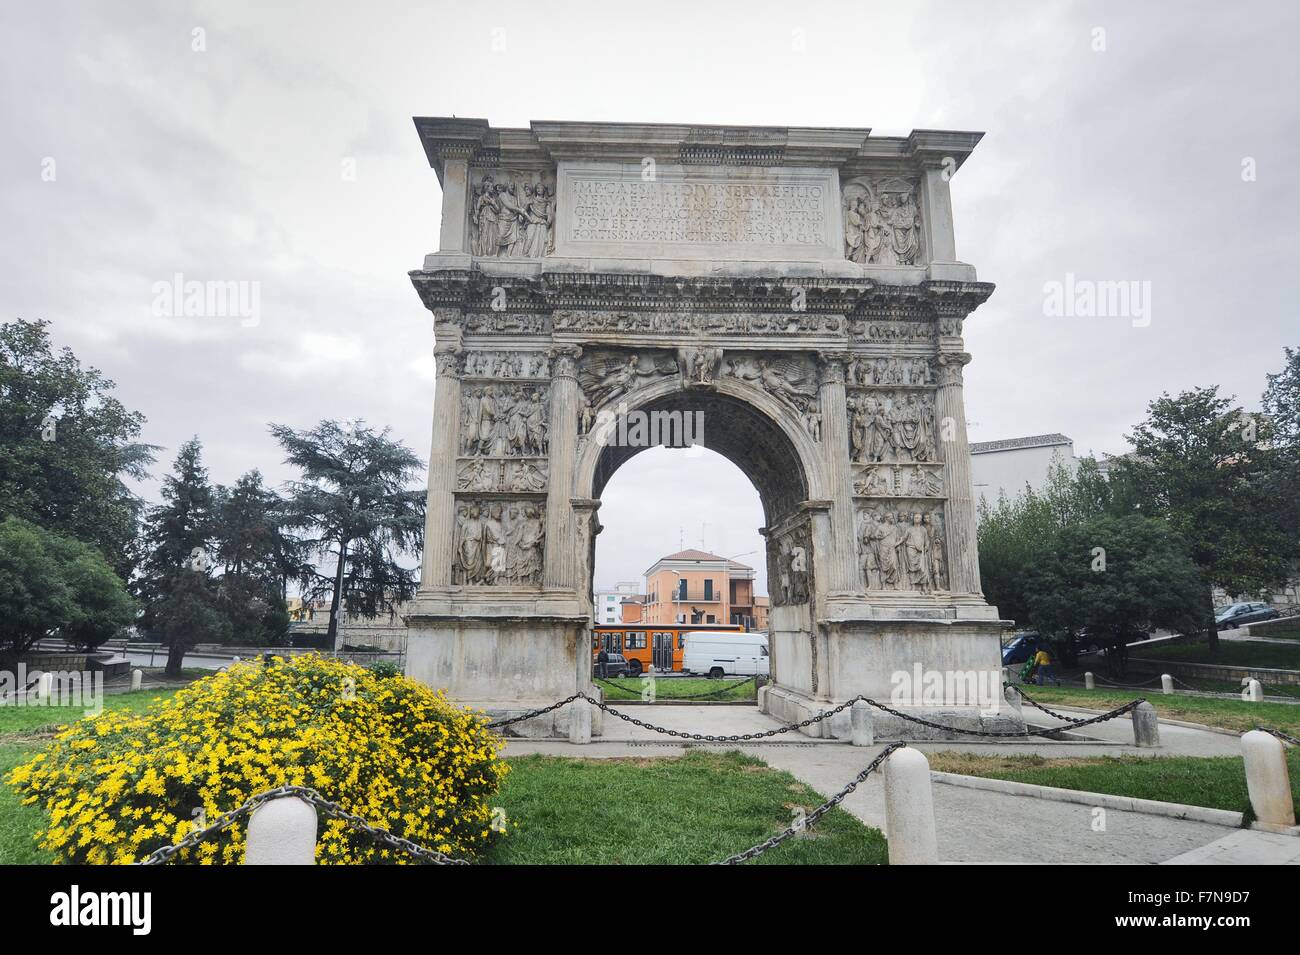 Bénévent (région de Campanie, Italie) Arc romain de Trajan Banque D'Images